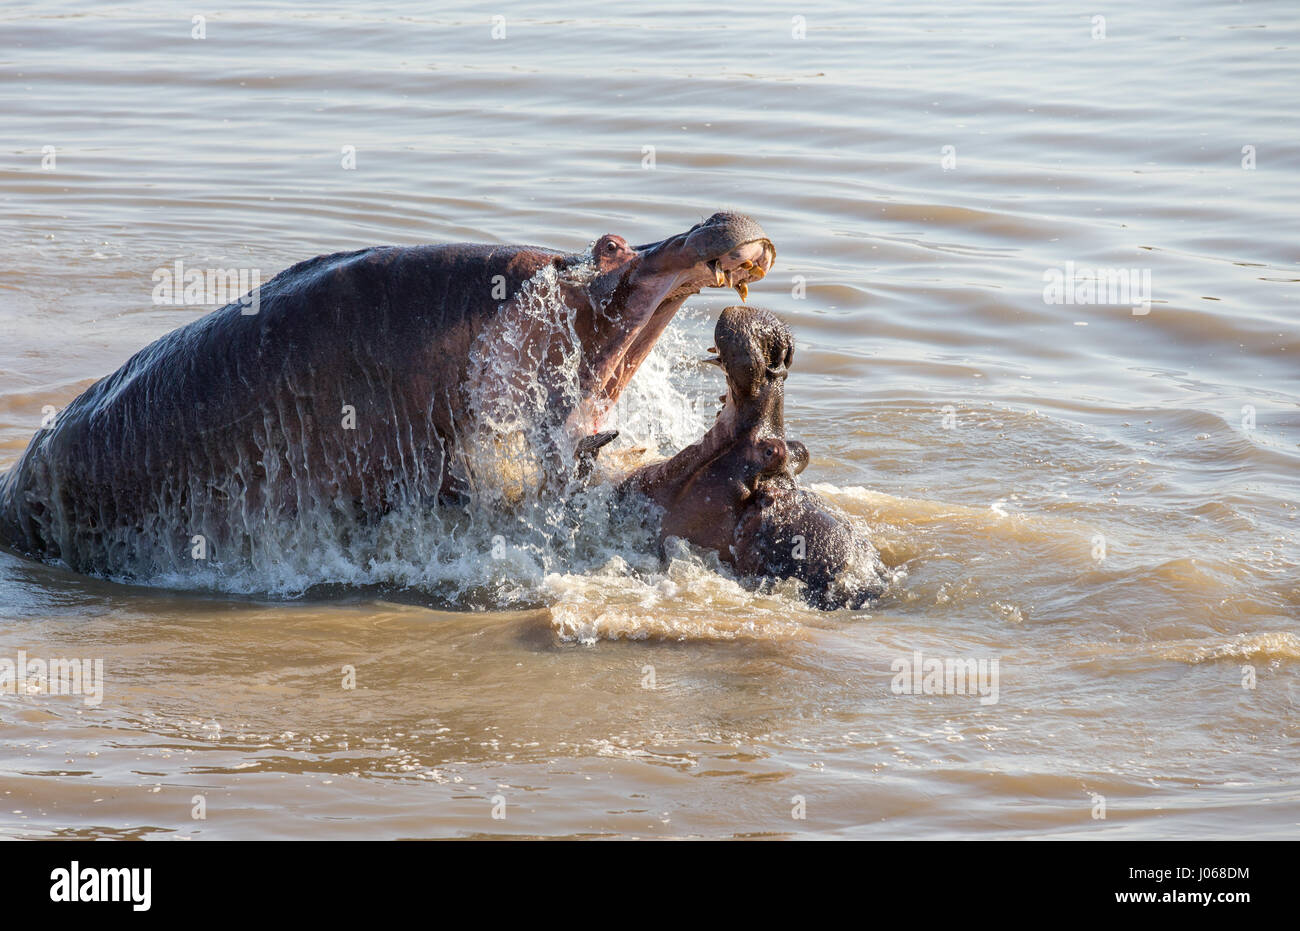 SOUTH LUANGWA, Sambia: Haben zwei riesige Flusspferde gerissen worden gegeneinander kämpfen über Wasser und Raum in einem allmächtigen Kampf der Titanen. Spektakuläre Action-Aufnahmen zeigen die zwei-Tonnen-Flusspferde vor sich und aggressiv entblößte ihre Zähne aufeinander. Die Allesfresser sind abgebildet in einer Lagune zu kämpfen, wie sie langsam heraus, tieferes Wasser treiben, während die Kriegsverletzungen auf ein Nilpferd mit einer Reihe von roten Schnittwunden, die Kreuz und quer über den Rücken deutlich zu erkennen. Die atemberaubenden Bilder wurden in South Luangwa, Sambia von Safari-Guide Peter Geraerdts (47), ursprünglich aus den Haag in den Niederlanden aufgenommen. Stockfoto